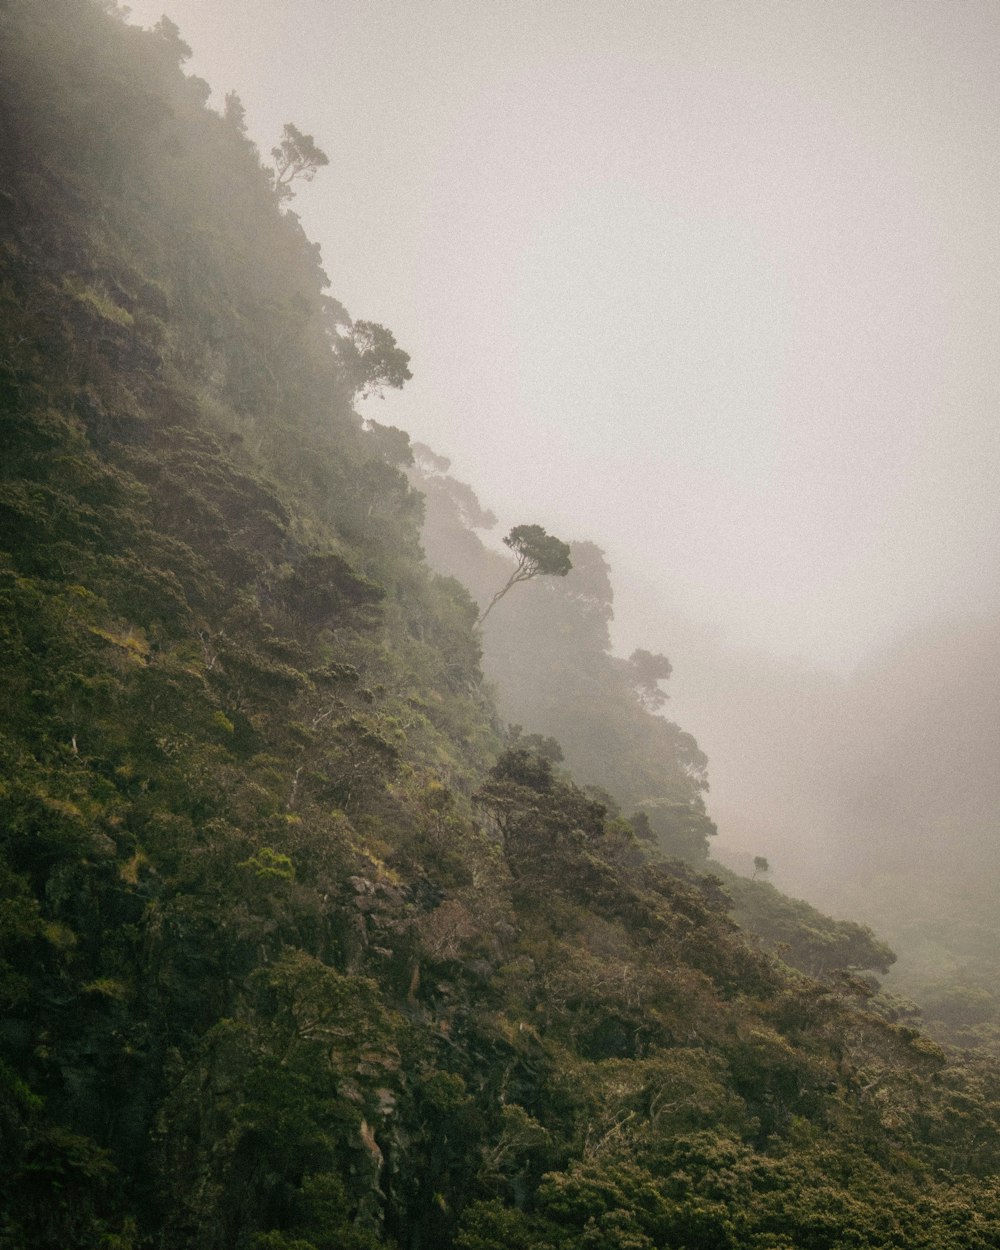 Ein einsamer Baum an der Seite eines Berges im Nebel